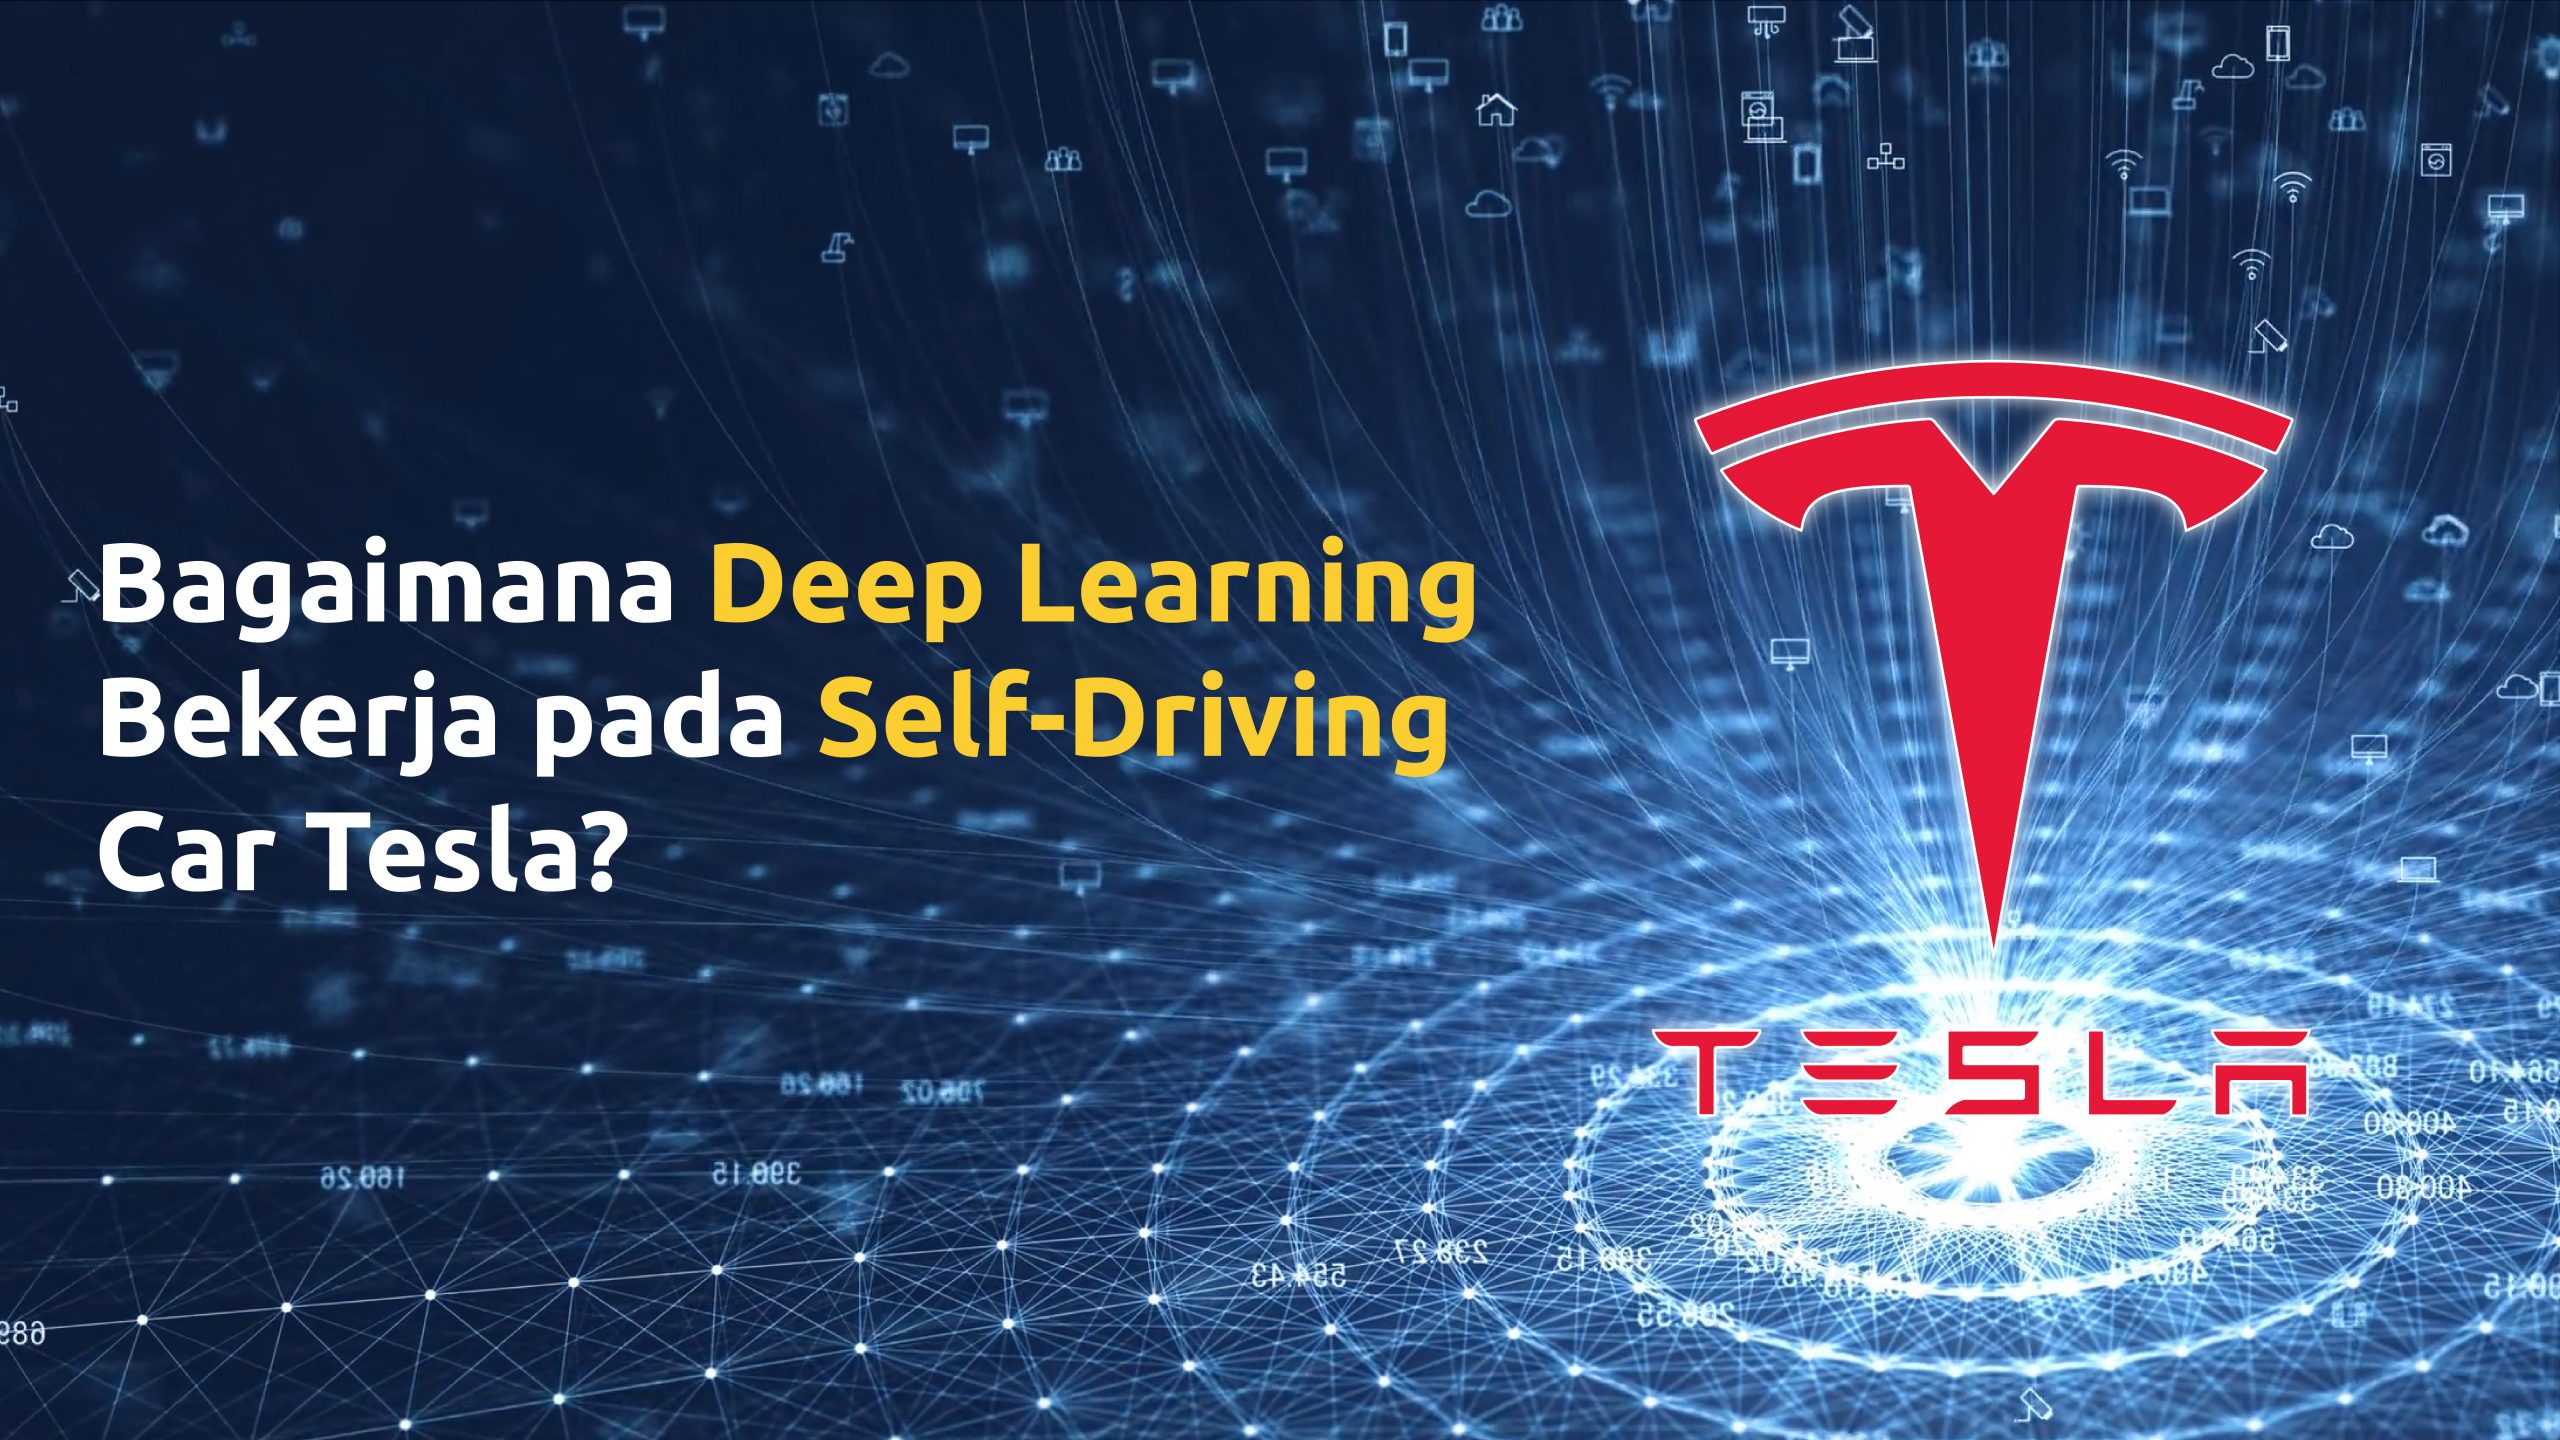 Bagaimana teknologi deep learning bekerja pada mobil self-driving Tesla